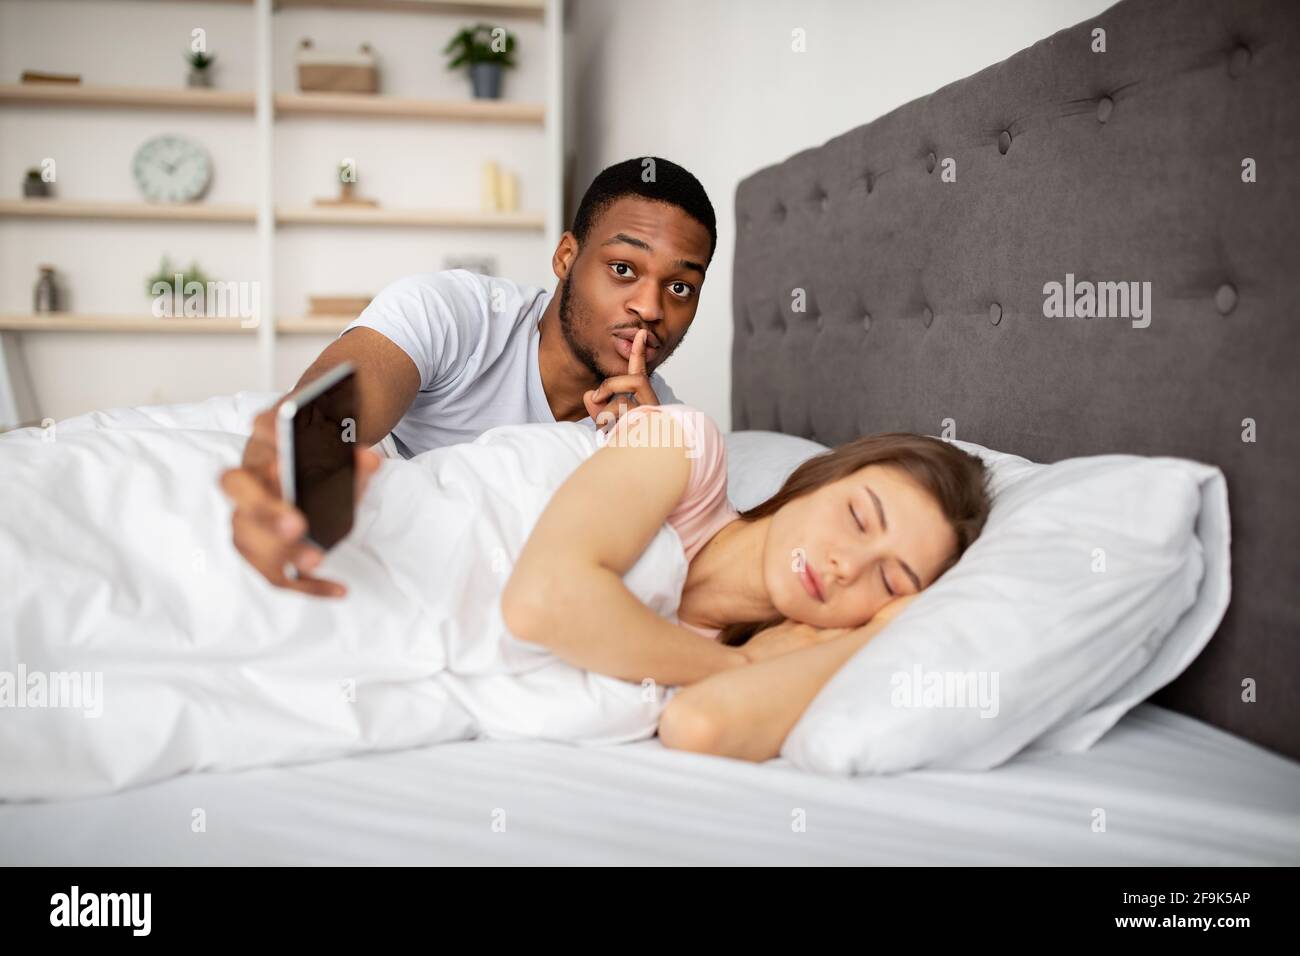 Un mari noir jaloux espionne sa femme, montrant un geste DE RUSE, vérifiant son téléphone mobile pendant qu'elle est endormi au lit Banque D'Images